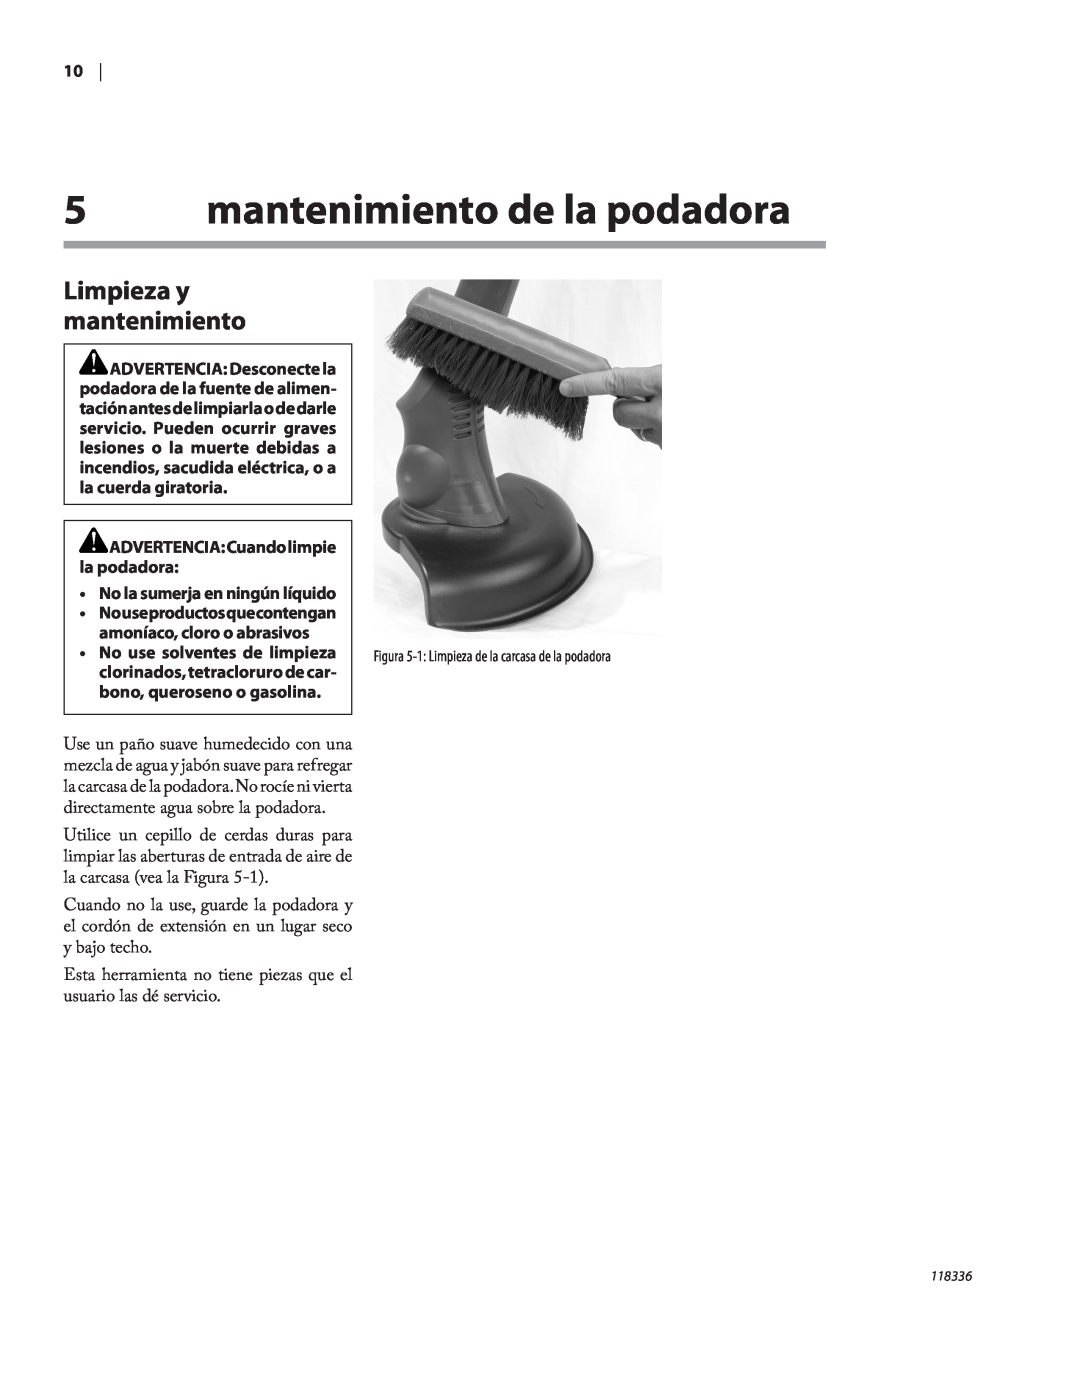 Remington Power Tools ST3010A mantenimiento de la podadora, Limpieza y mantenimiento, No use solventes de limpieza 